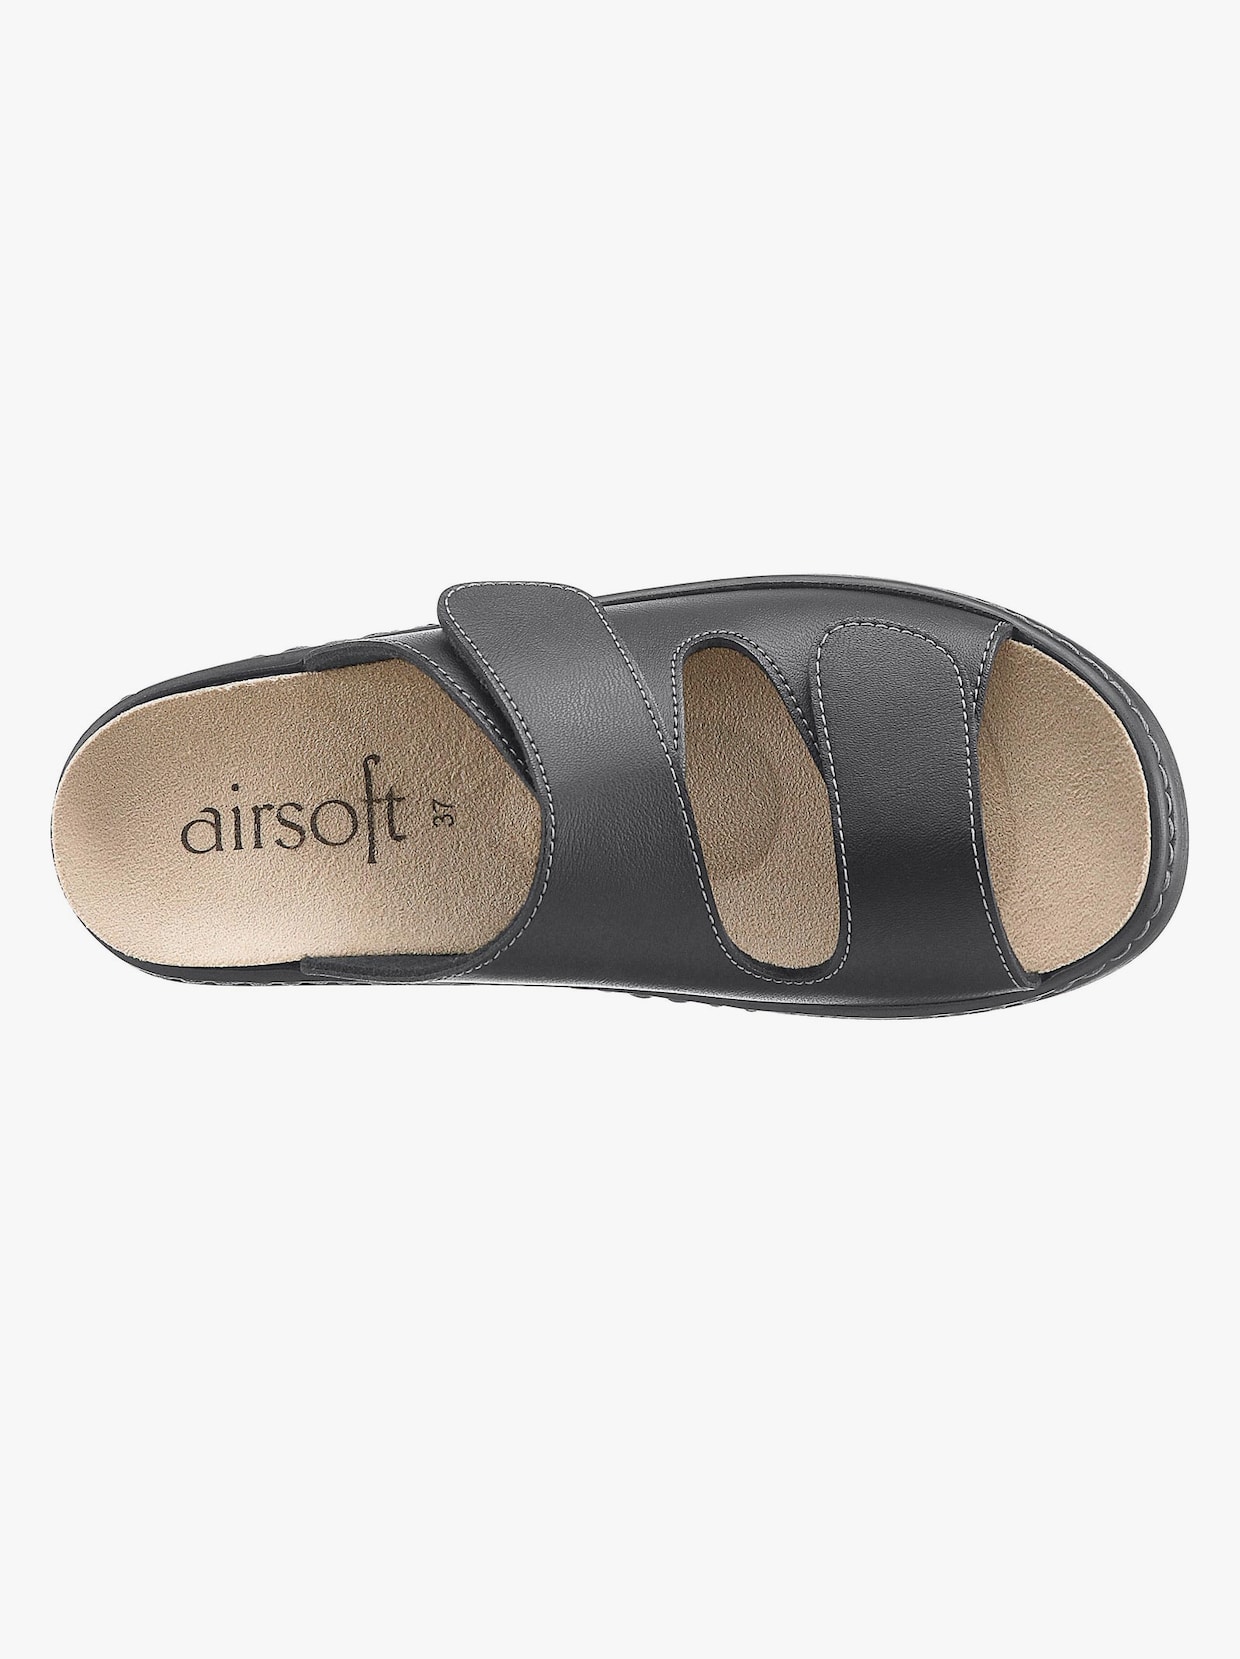 Airsoft Pantolette - schwarz